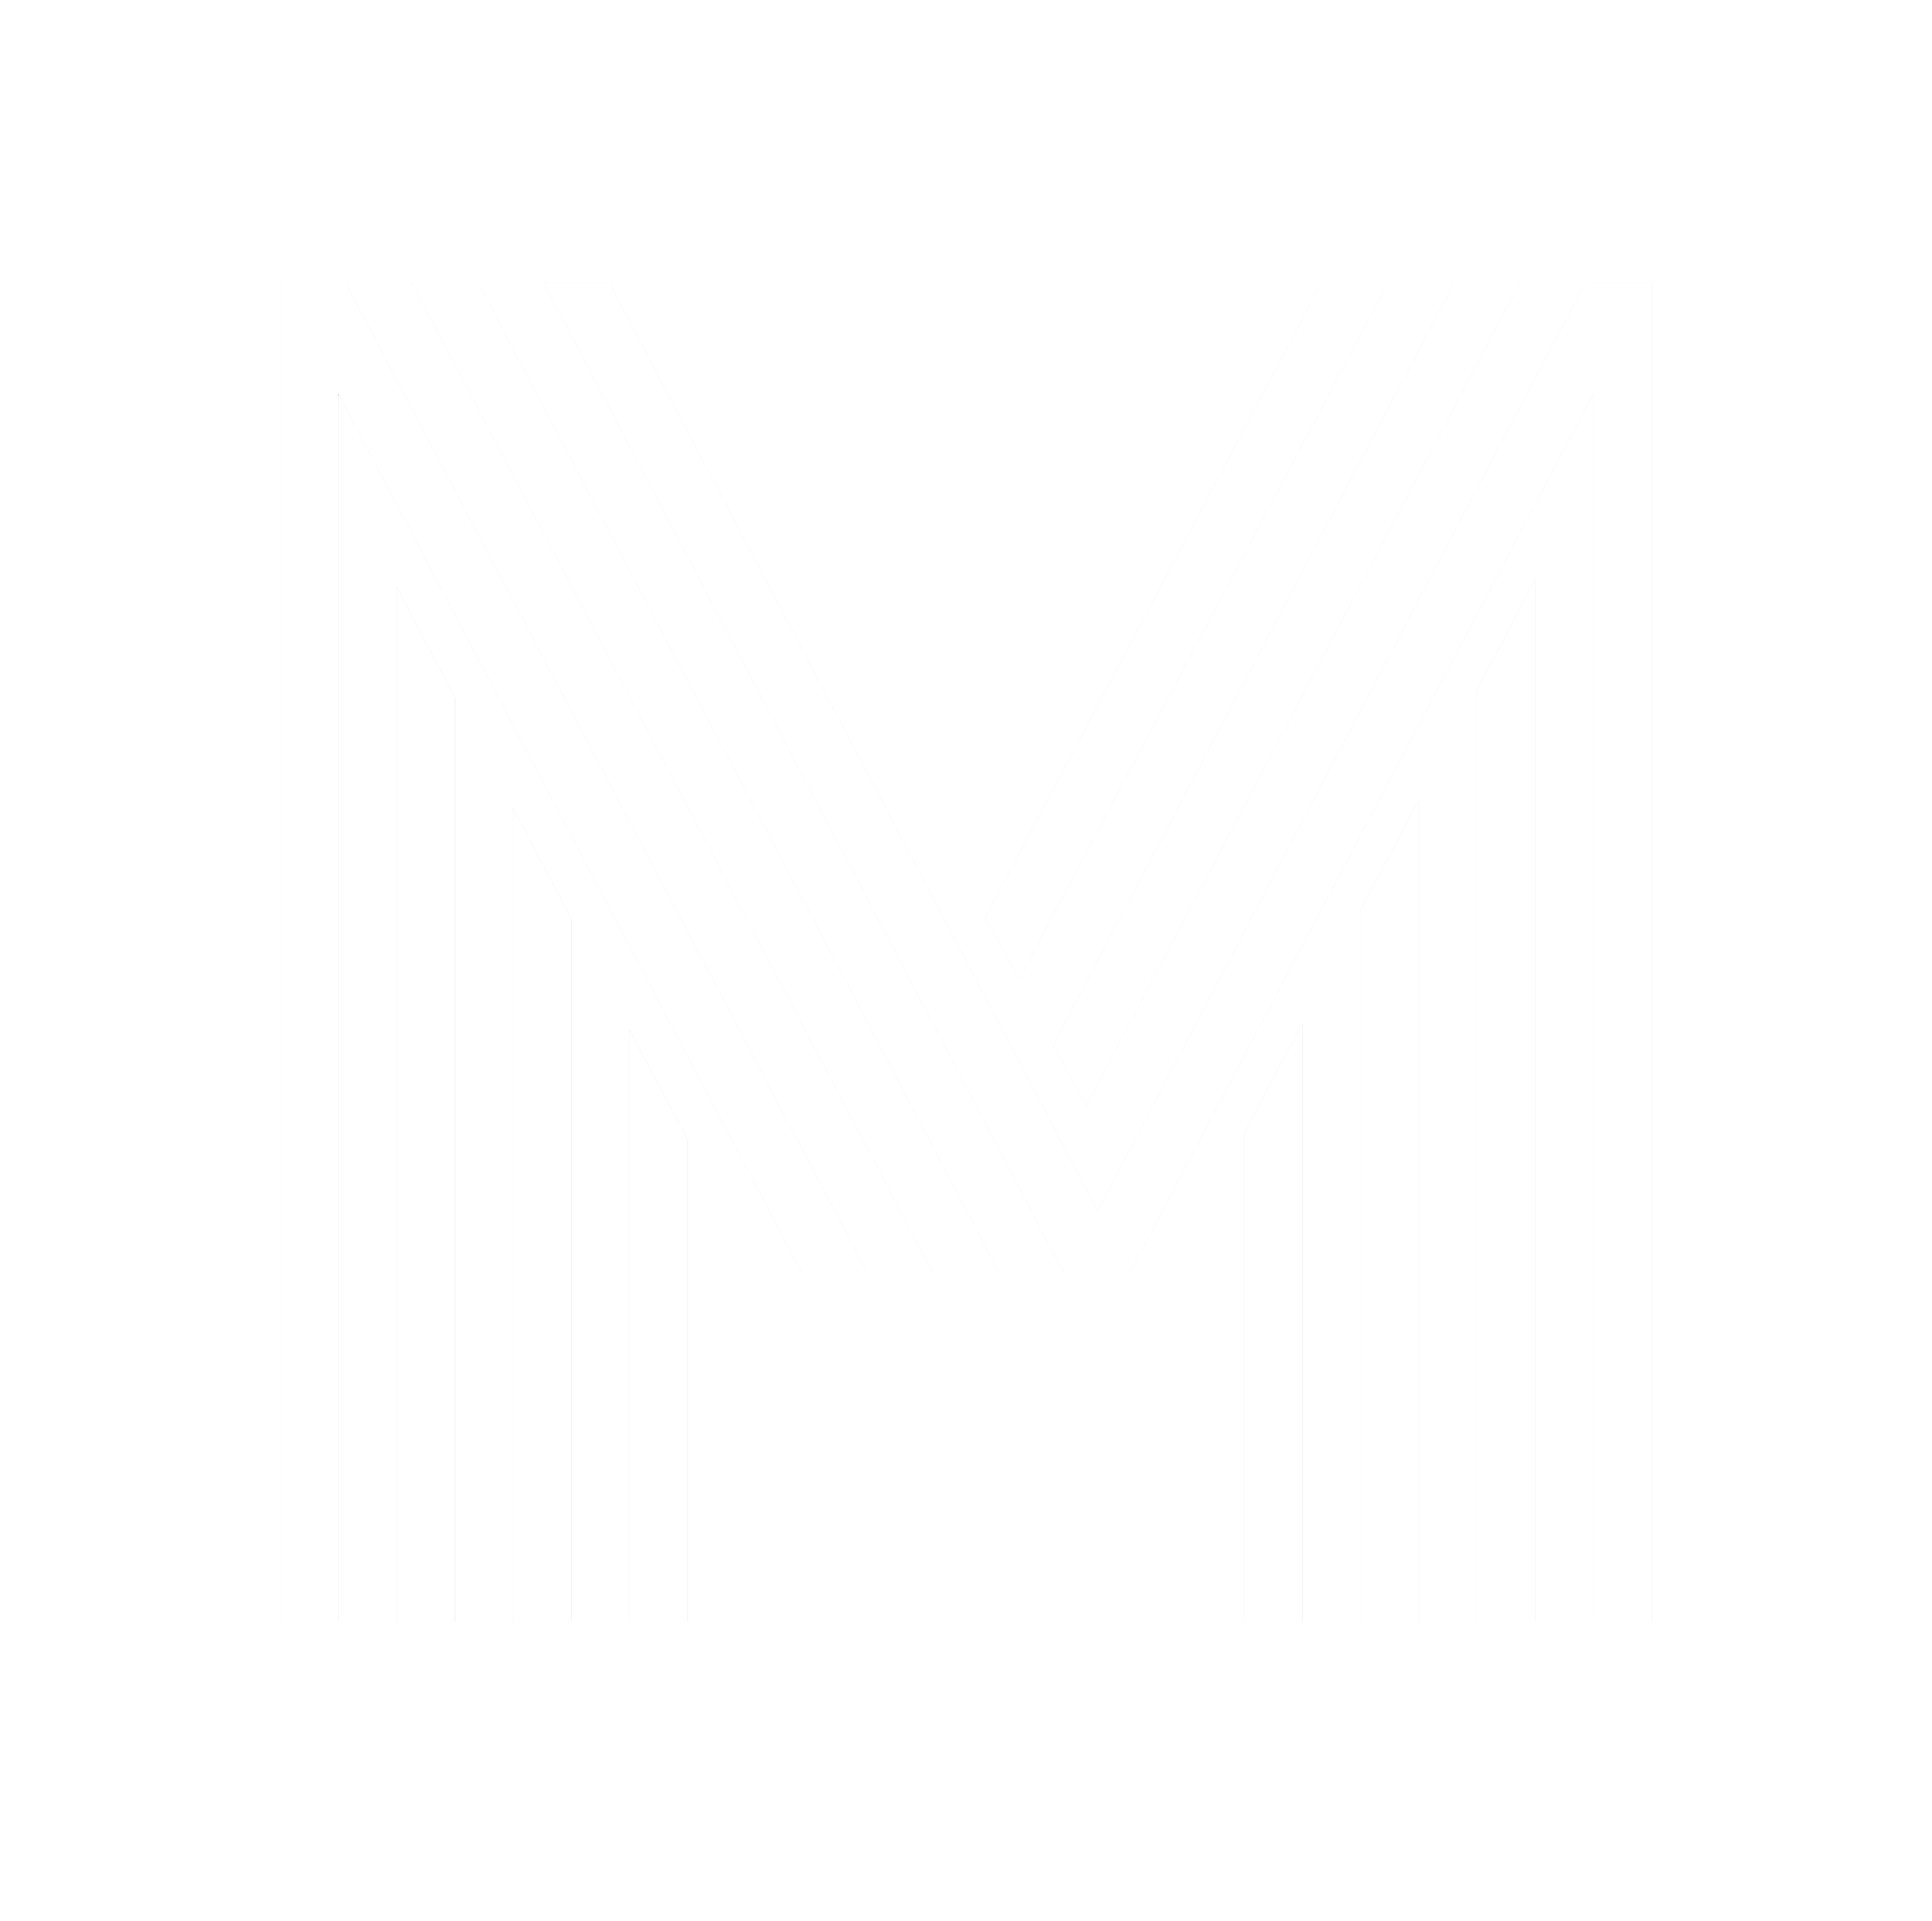 Matchbox Logo - Home | Matchbox